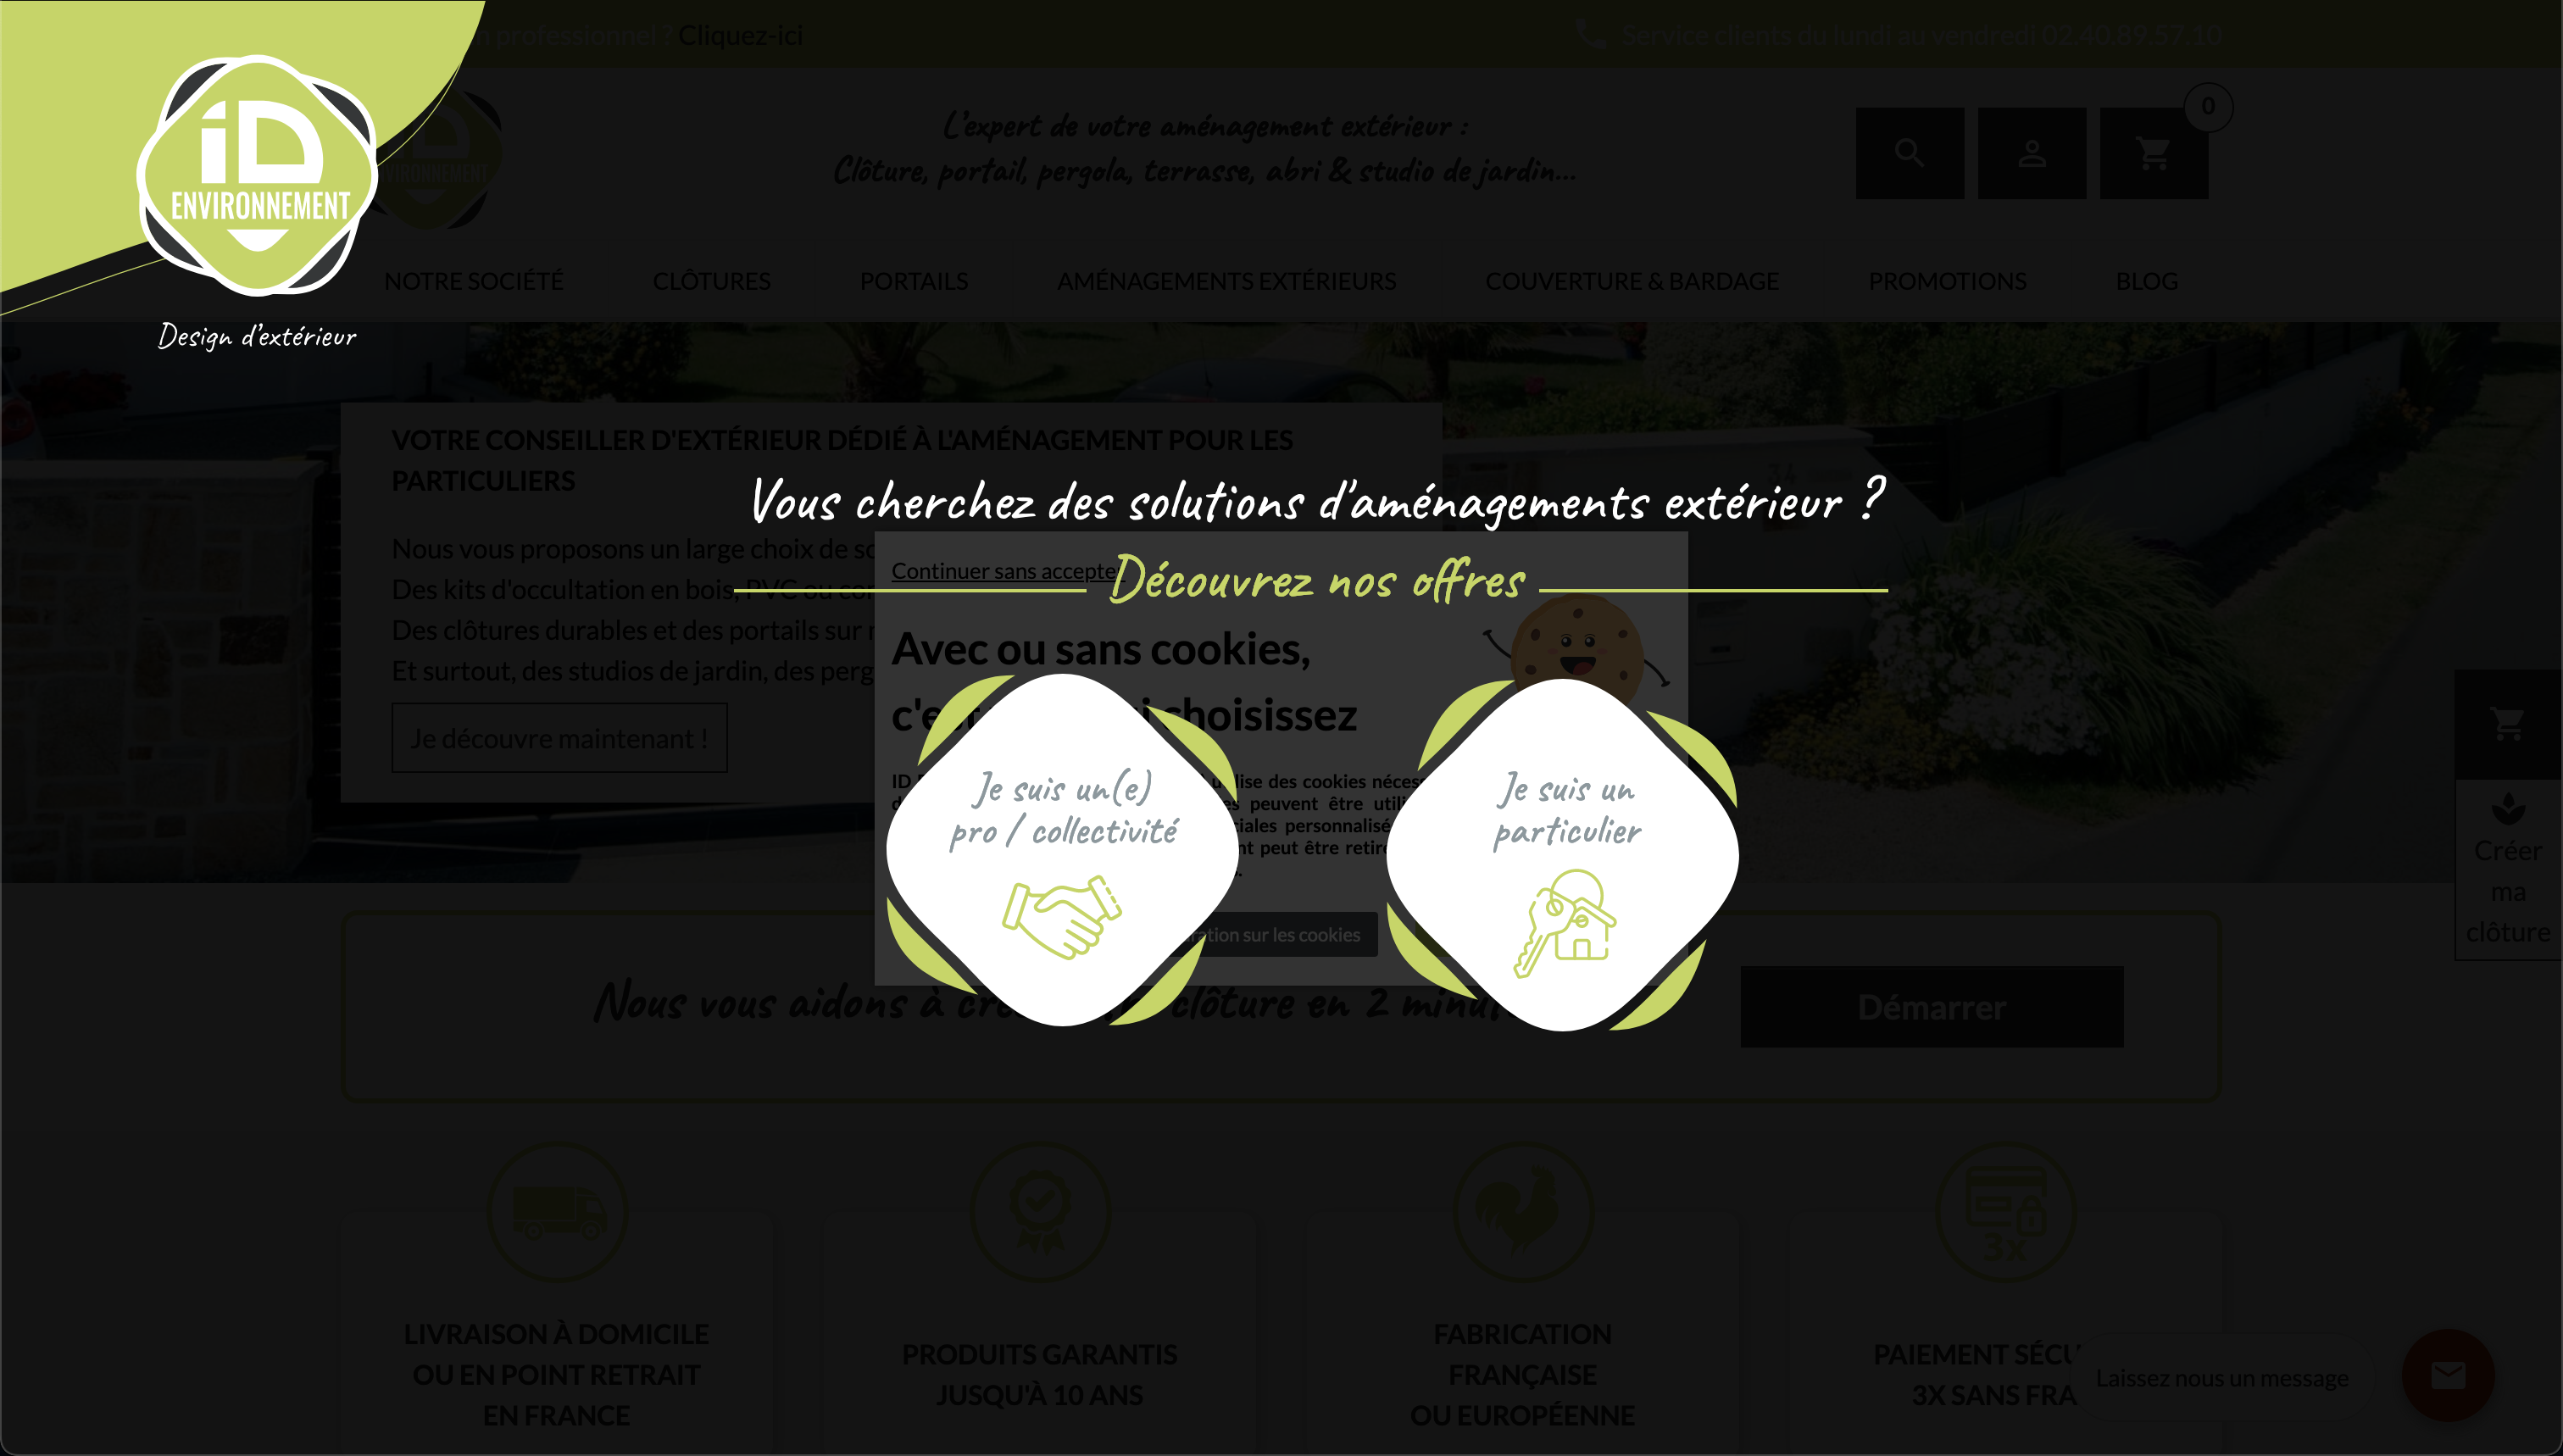 Portillon grillage - Portillon mailles | ID Environnement - Agence Boistière